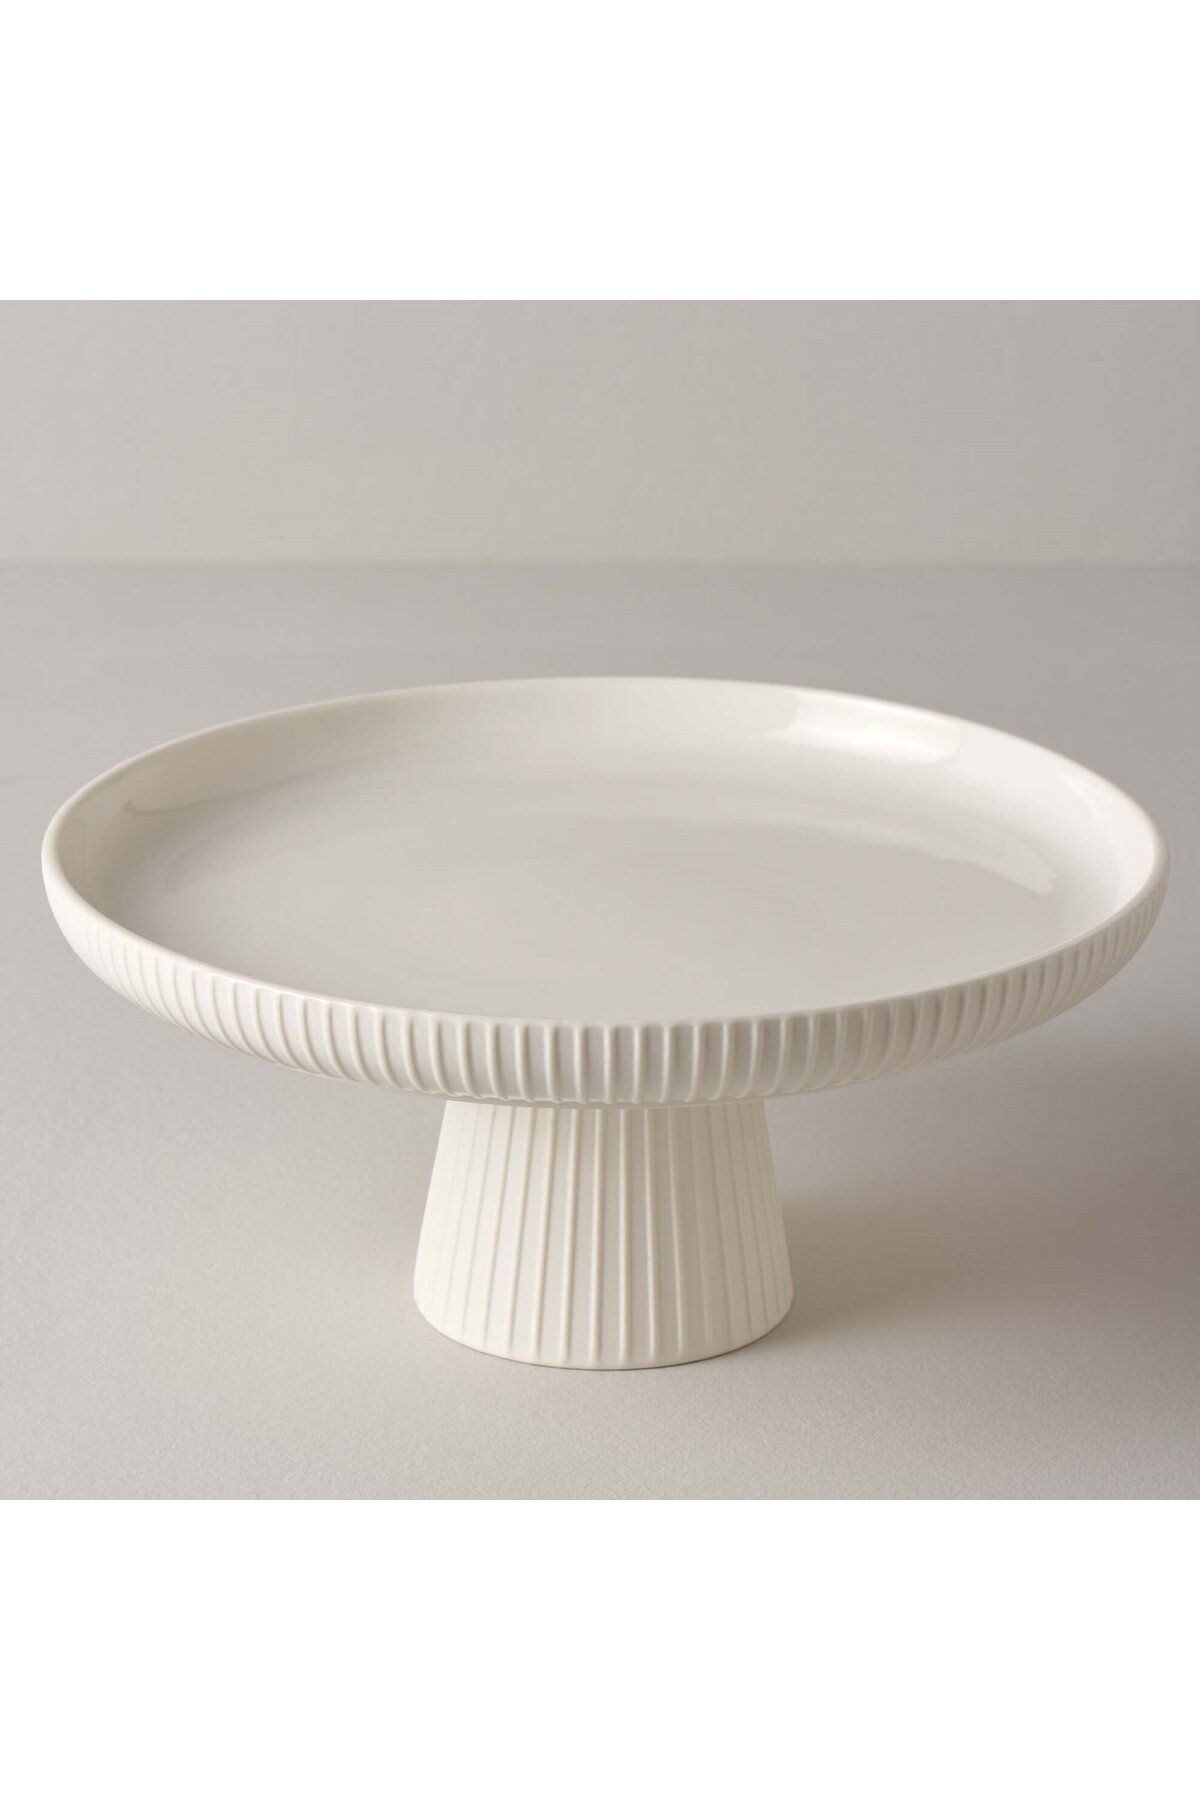 Linens Trend Porselen 26 Cm Ayaklı Tabak Beyaz